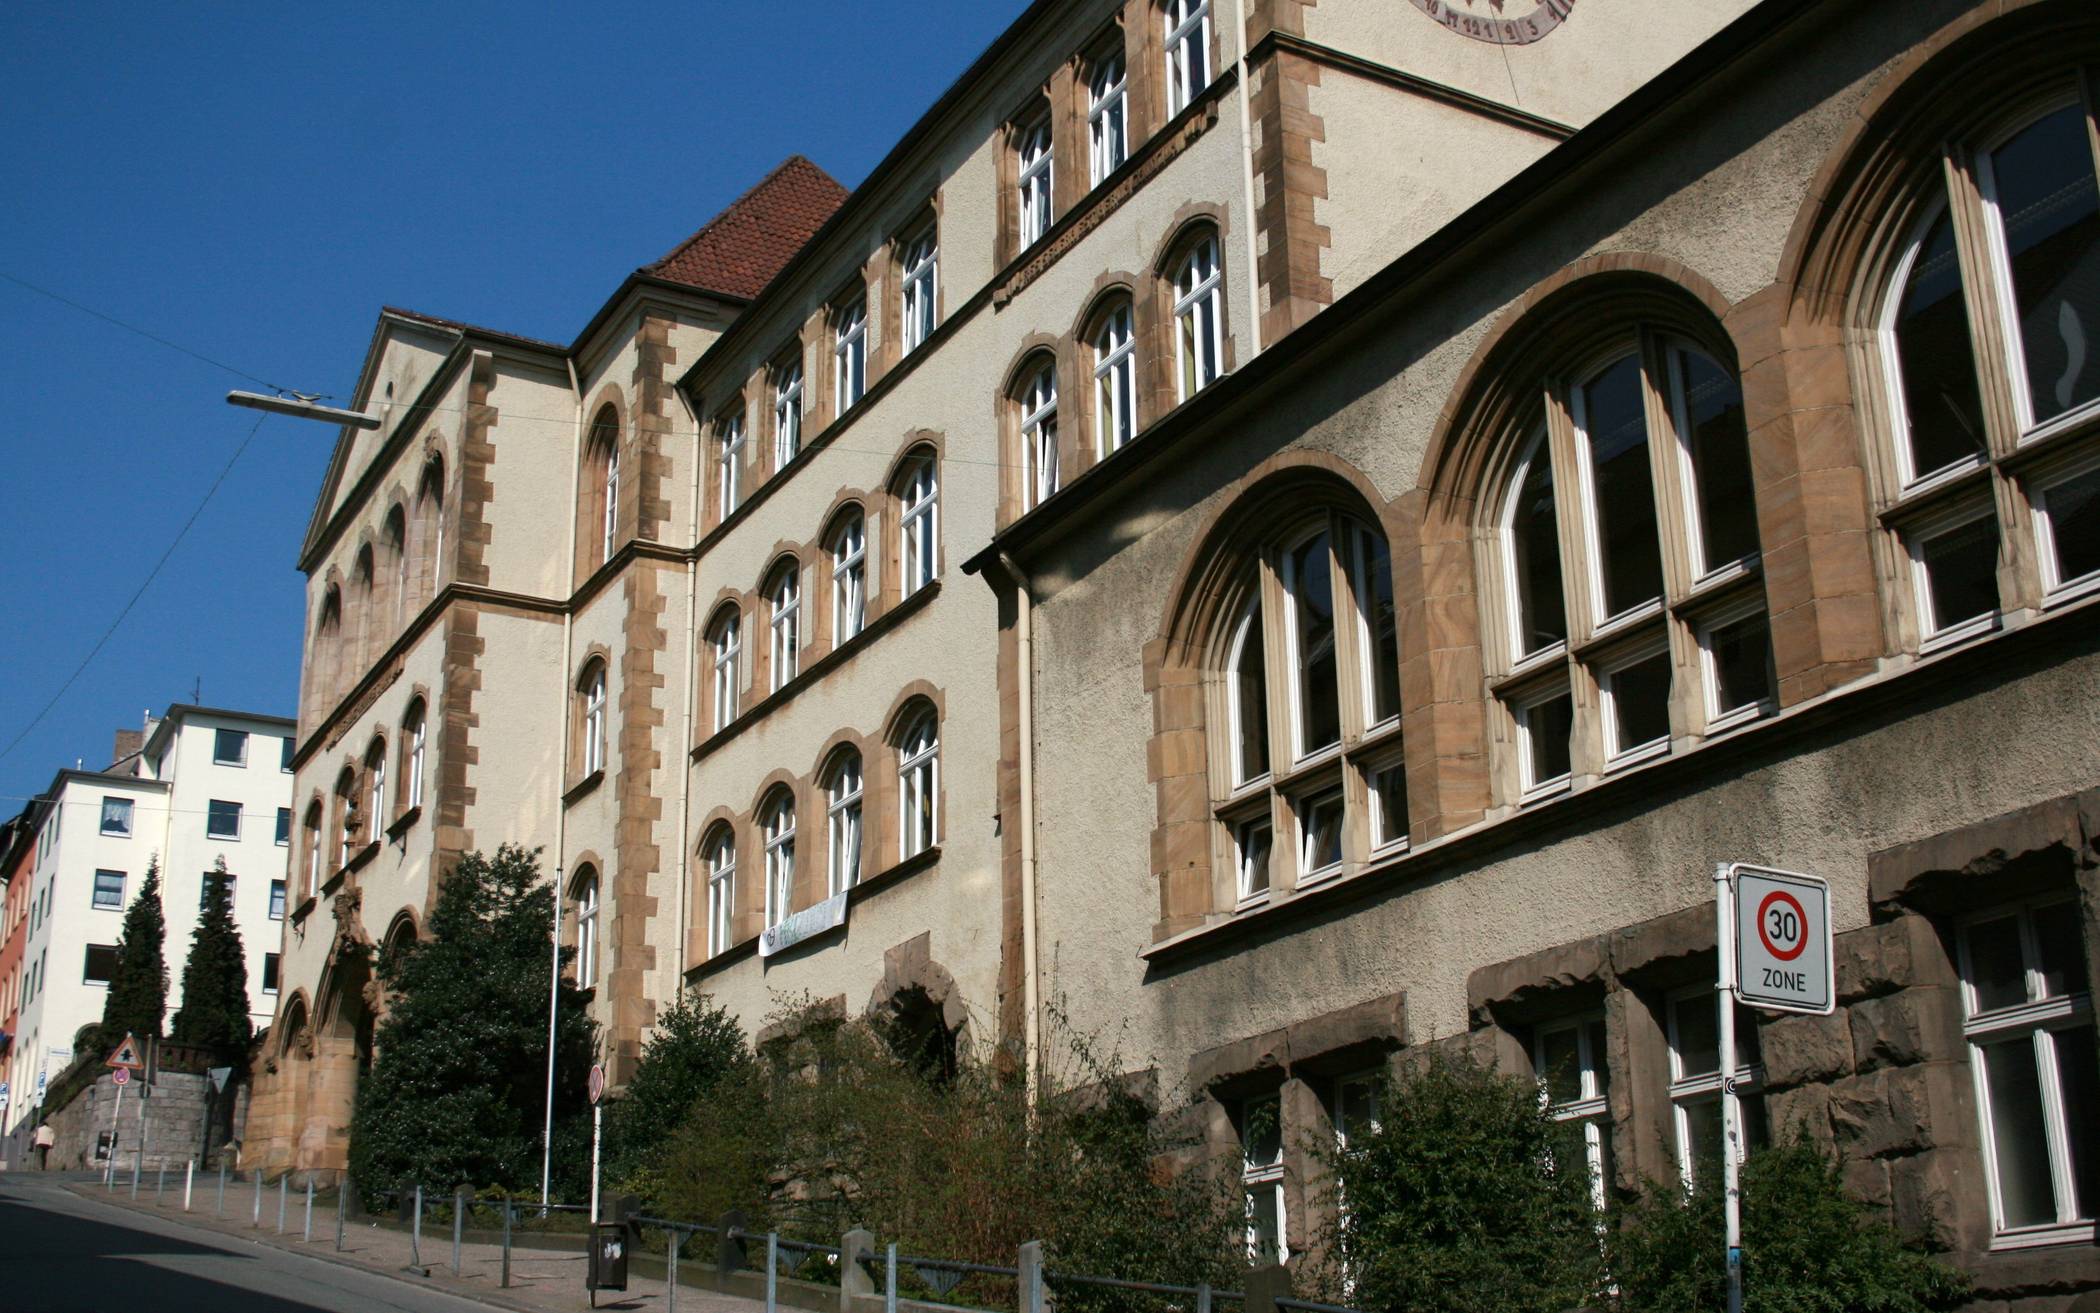  Das Gymnasium am Sedansberg.  